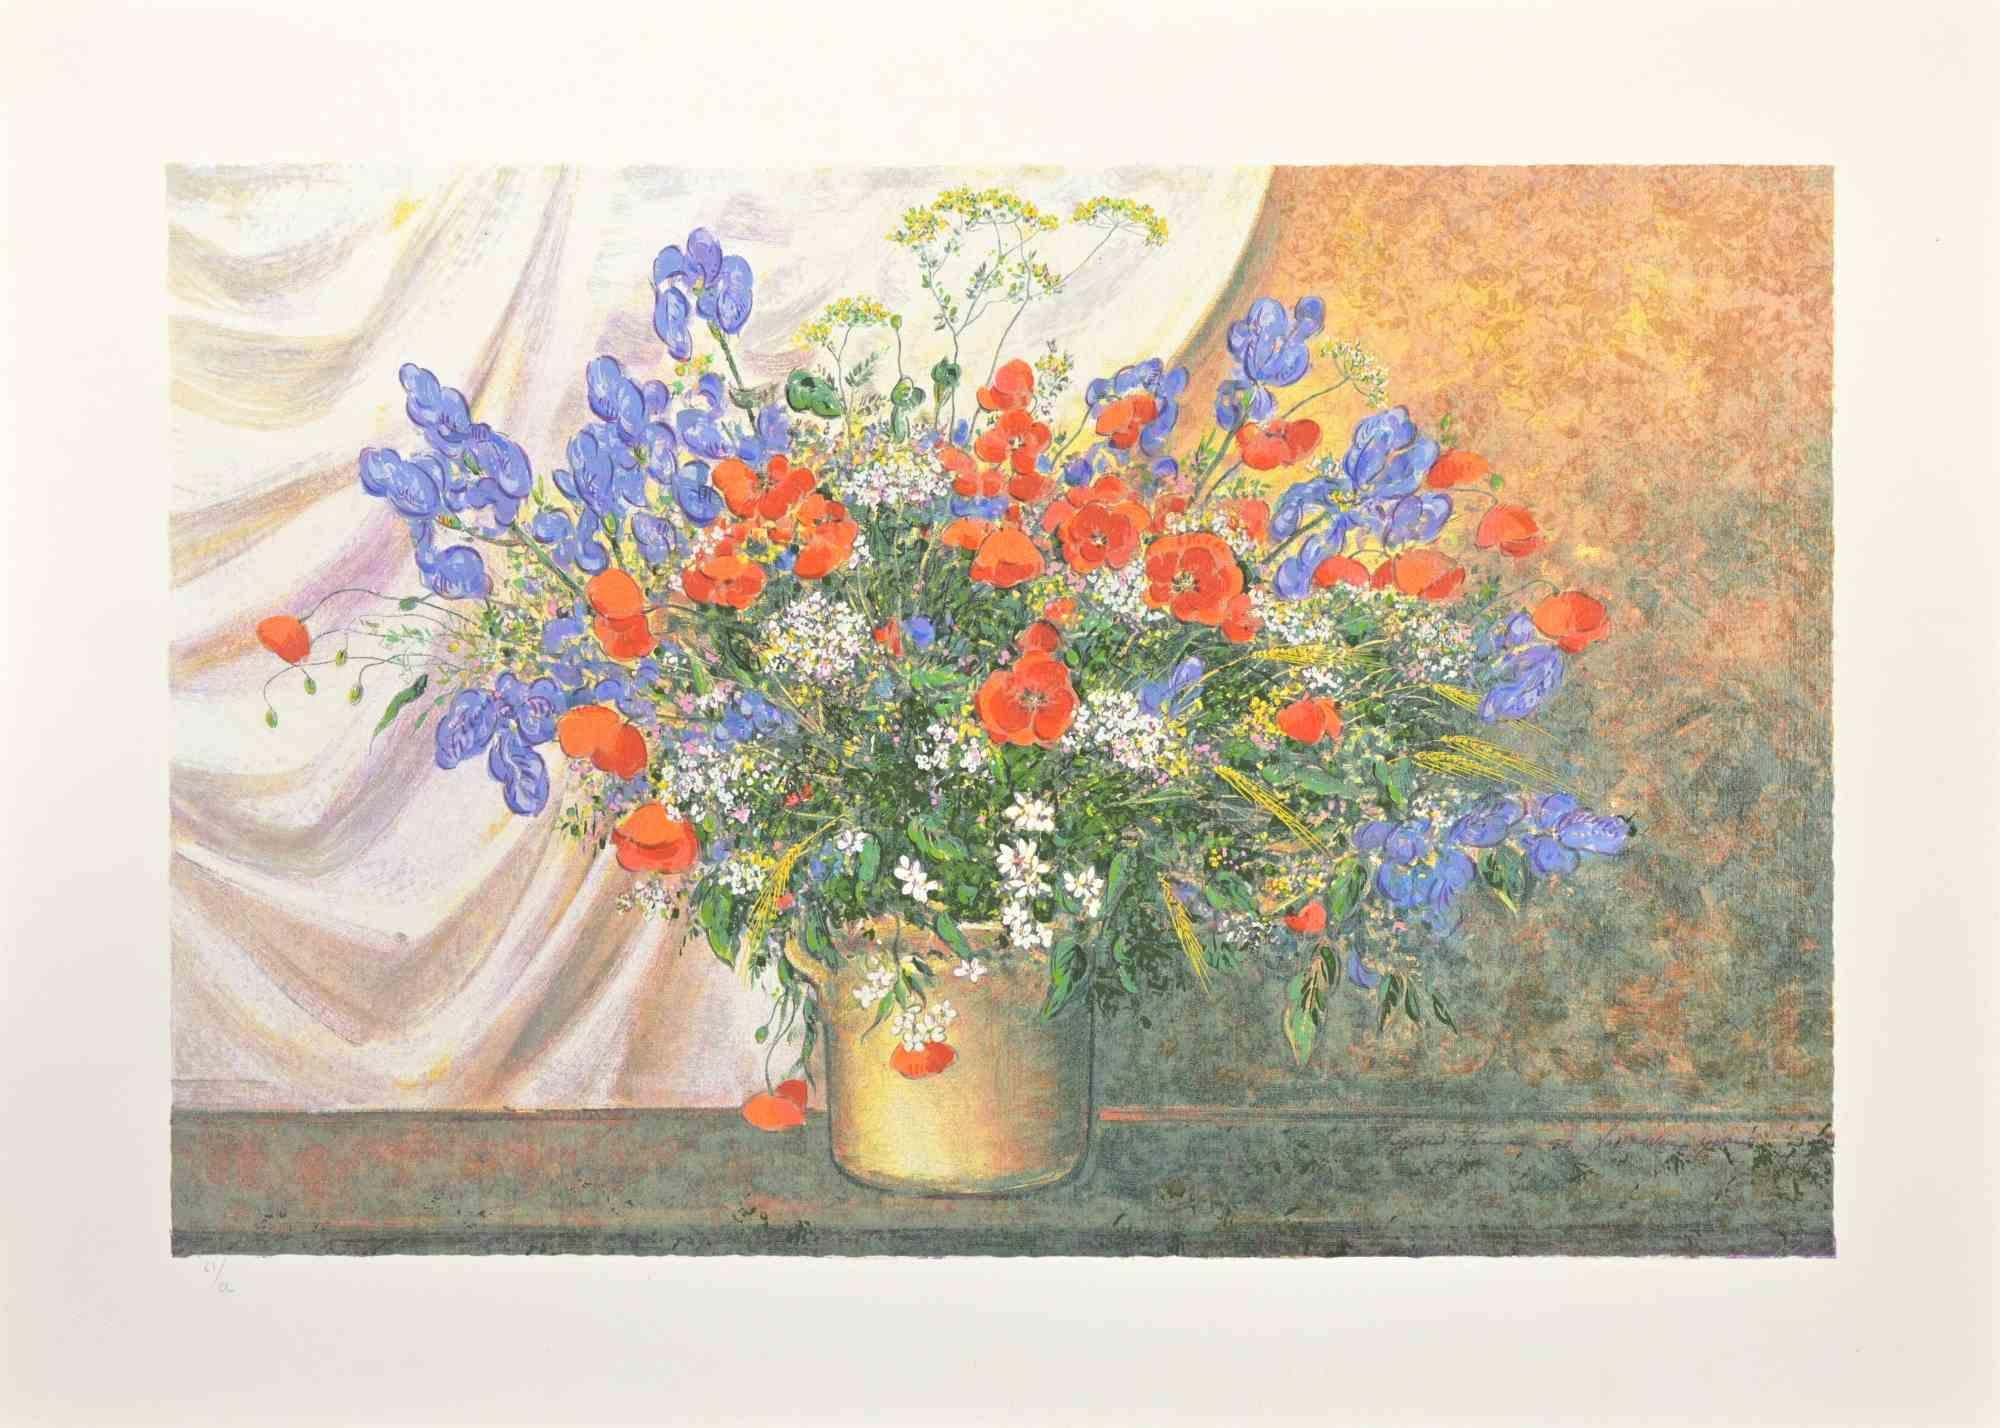 Wildflowers ist ein modernes Kunstwerk von Franco Bocchi aus den 1980er Jahren.

Gemischter farbiger Siebdruck.

Handsigniert am unteren Rand.

 Am linken unteren Rand nummeriert. Auflage: 200 Exemplare.

Franco Bocchi wurde am 25. November 1951 in